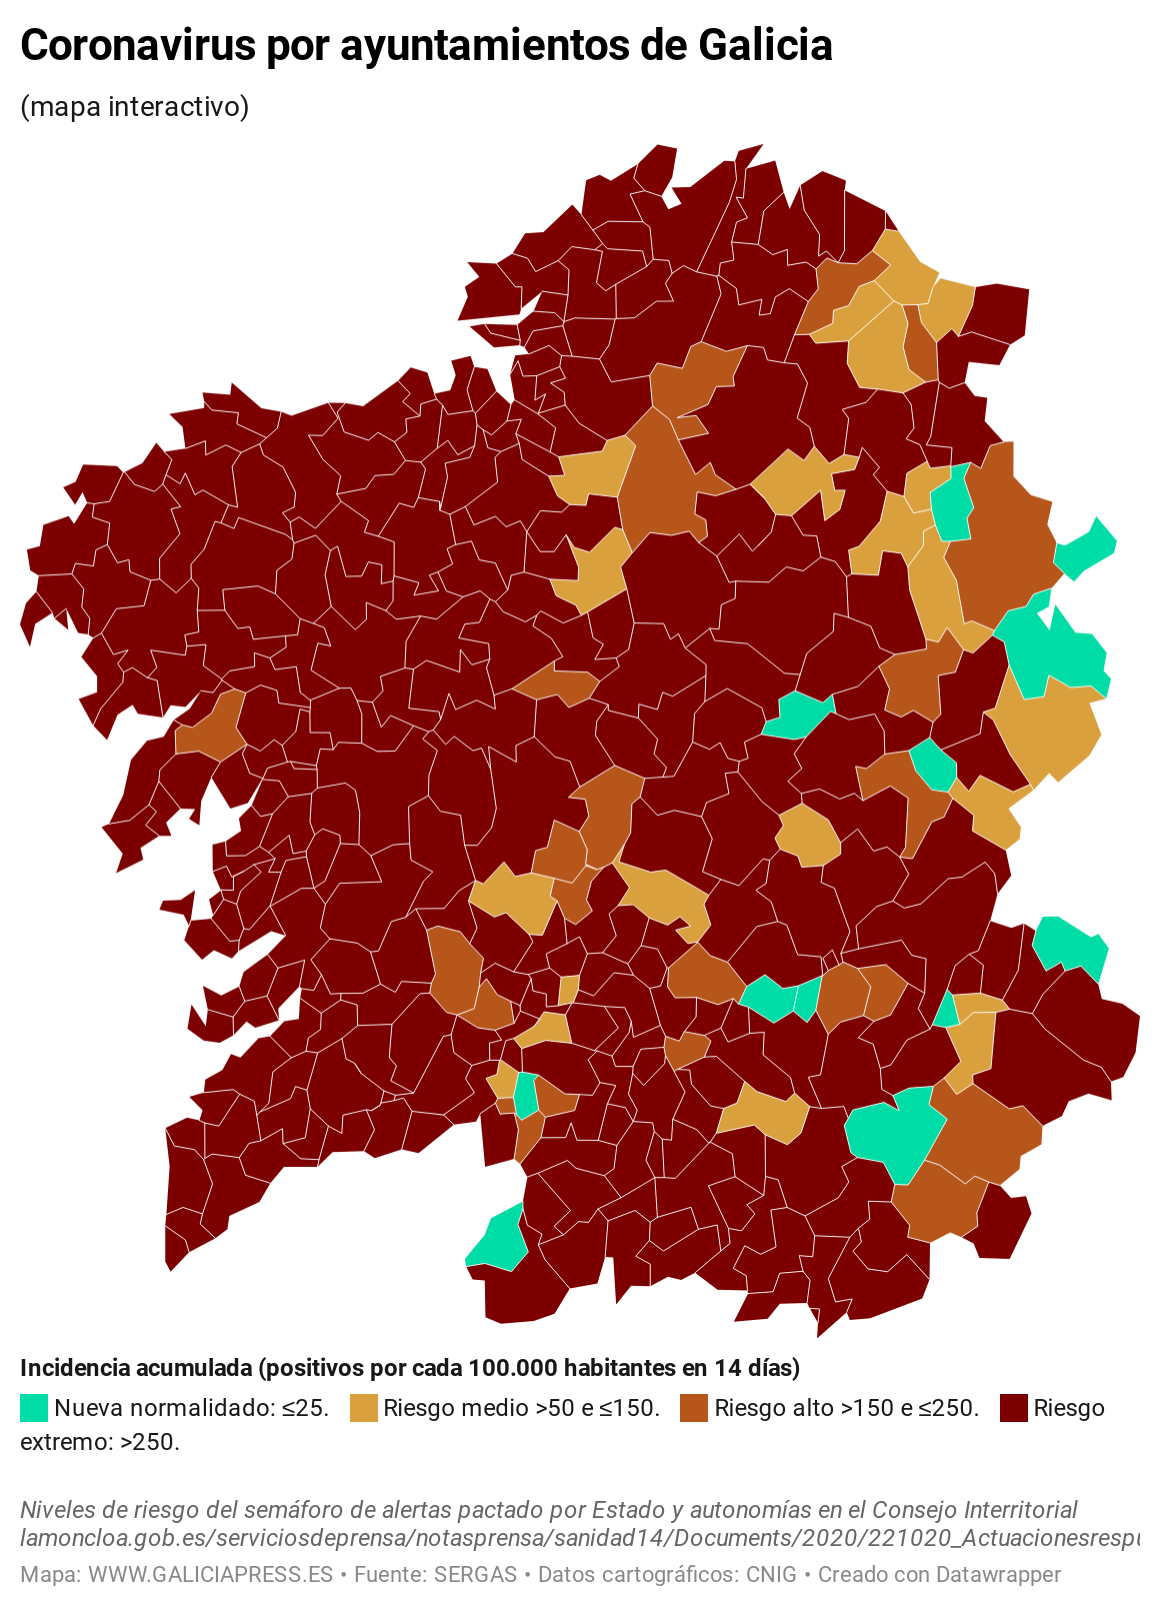 KV7EO coronavirus por ayuntamientos de galicia  (2)